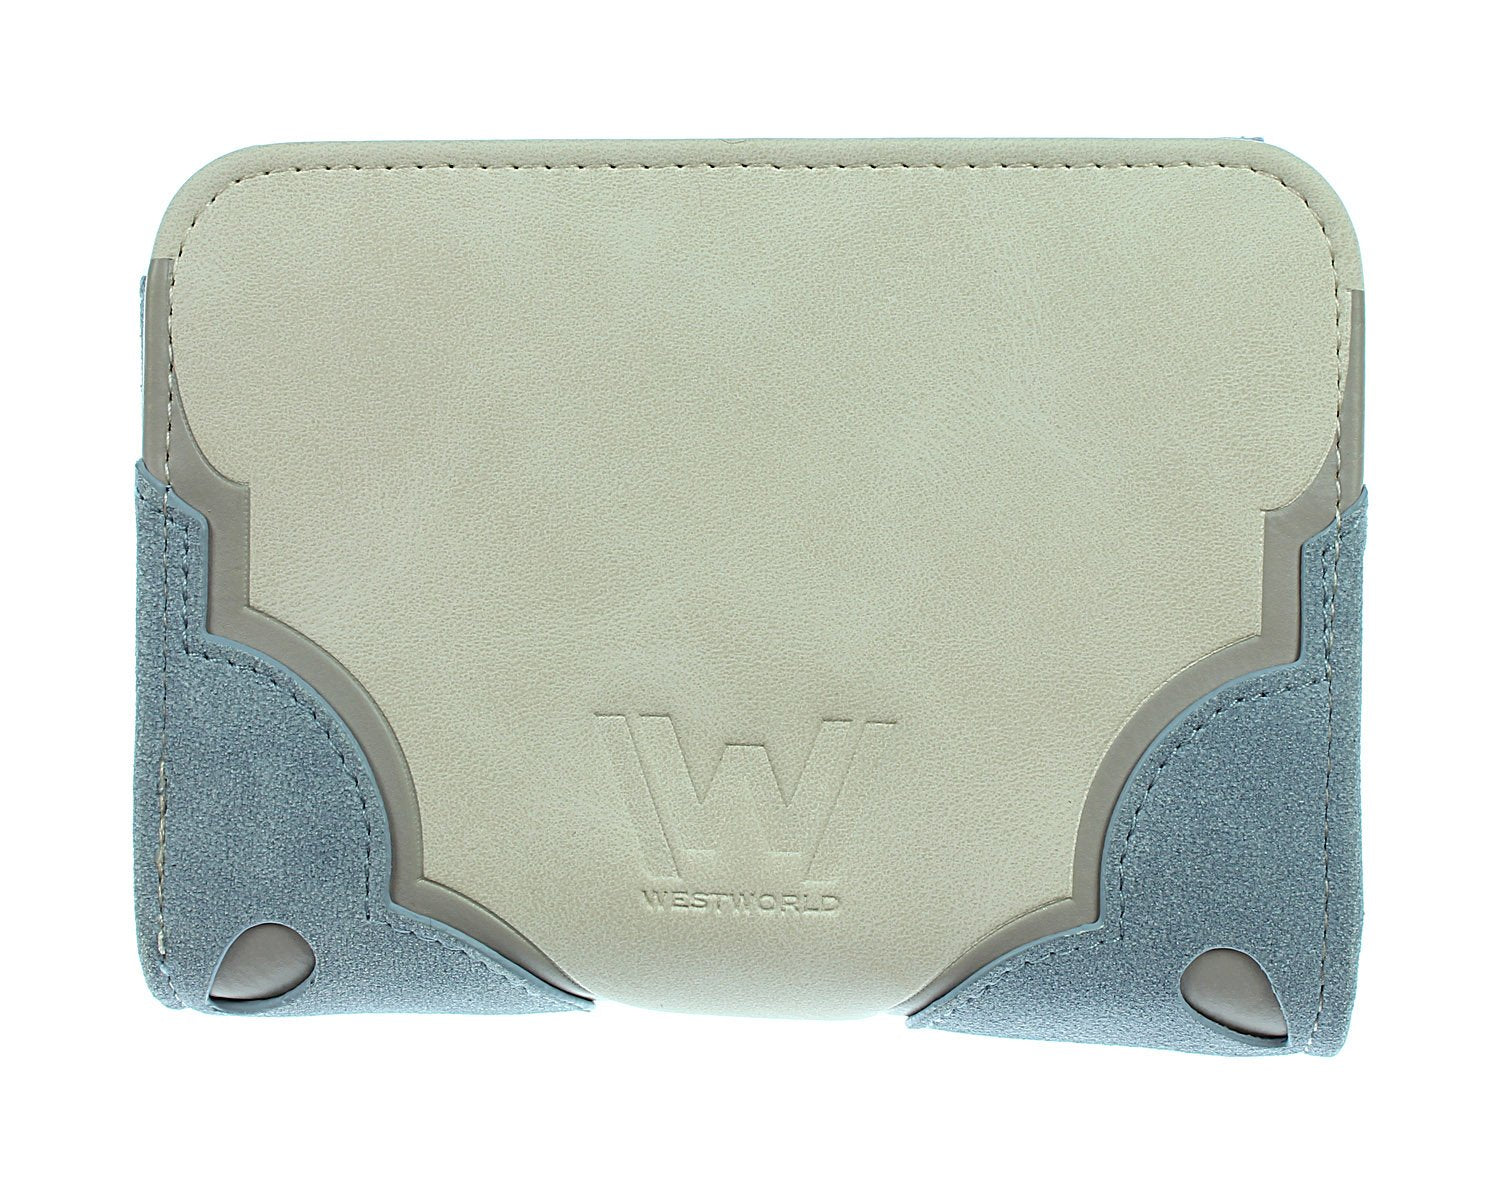 Westworld Jr's Bi-Fold Wallet - These Violent Delights Have Violent Ends Wallet